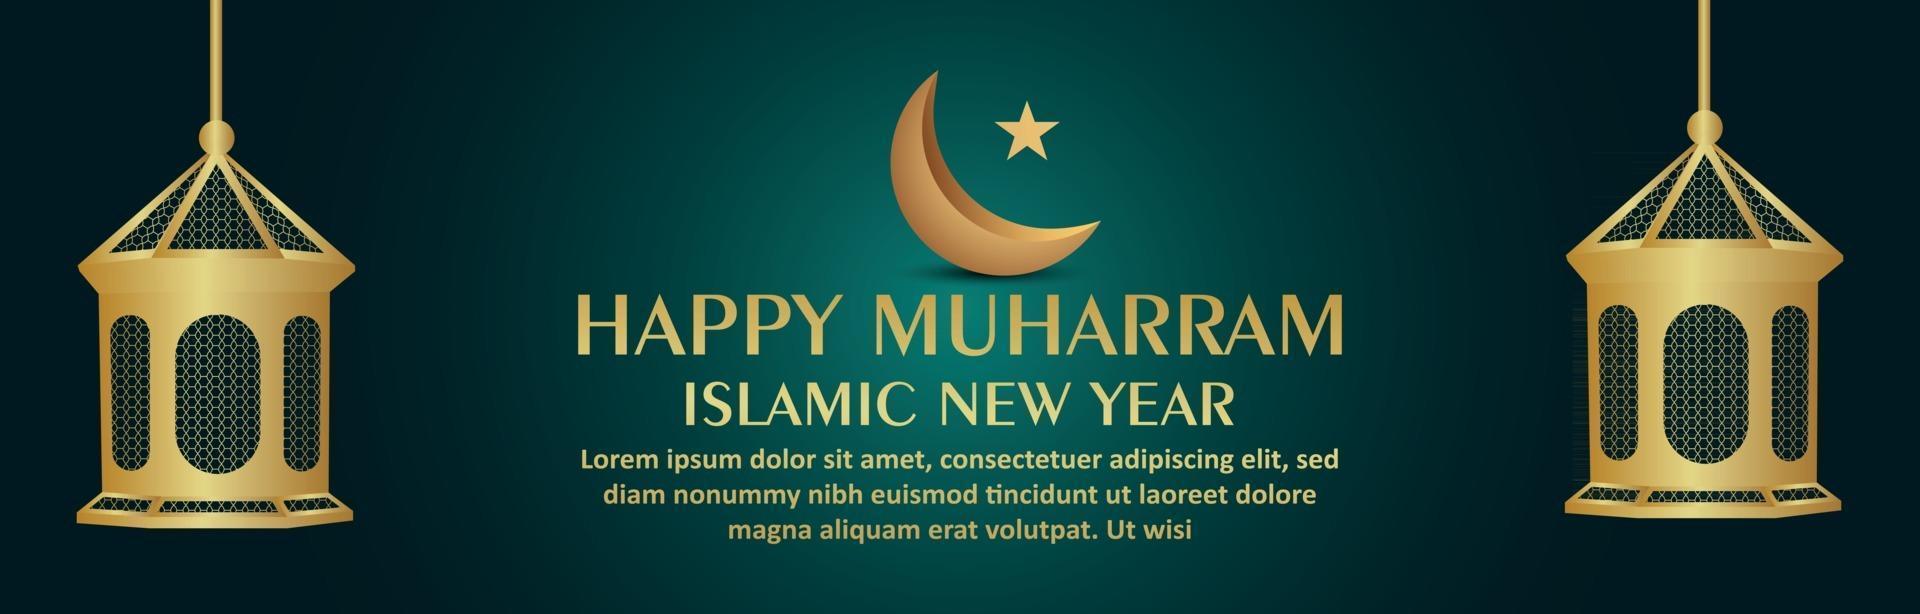 Frohes Muharram-Festbanner des islamischen neuen Jahres mit islamischer goldener Laterne und Mond vektor